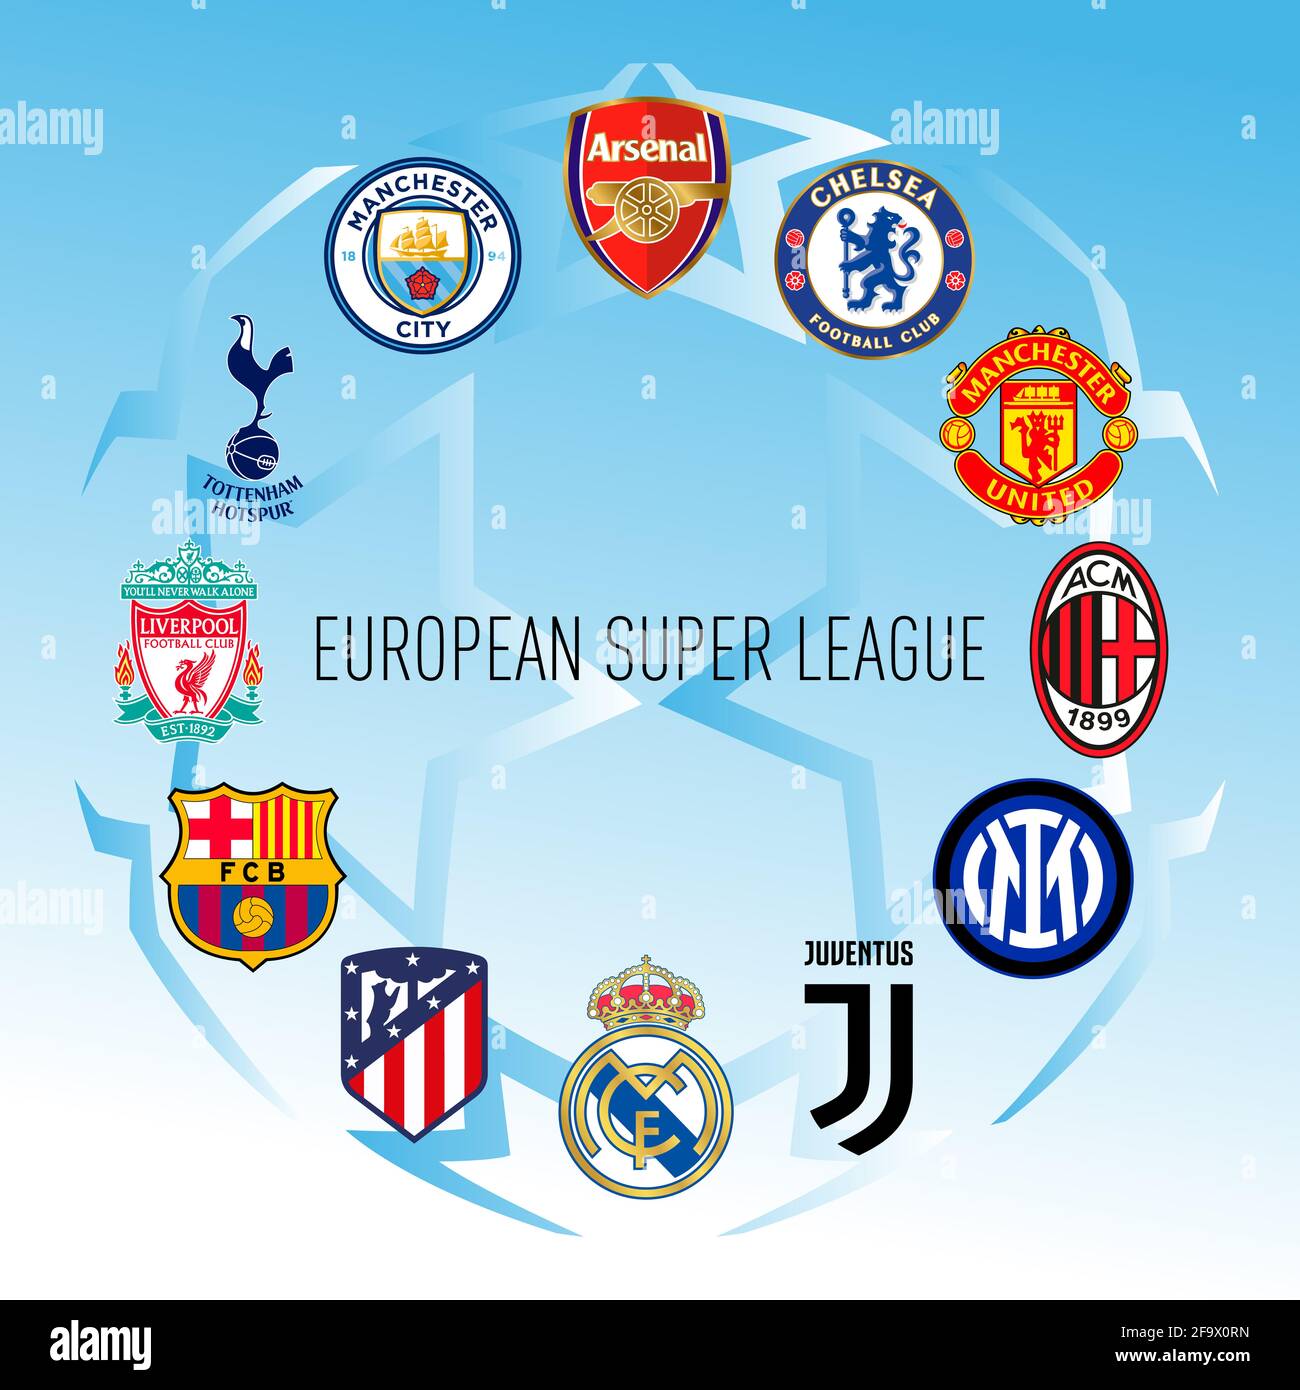 Europa, anno 2021, squadra di stemma dei Football Club nel nuovo campionato europeo Super League, illustrazione vettoriale Foto Stock